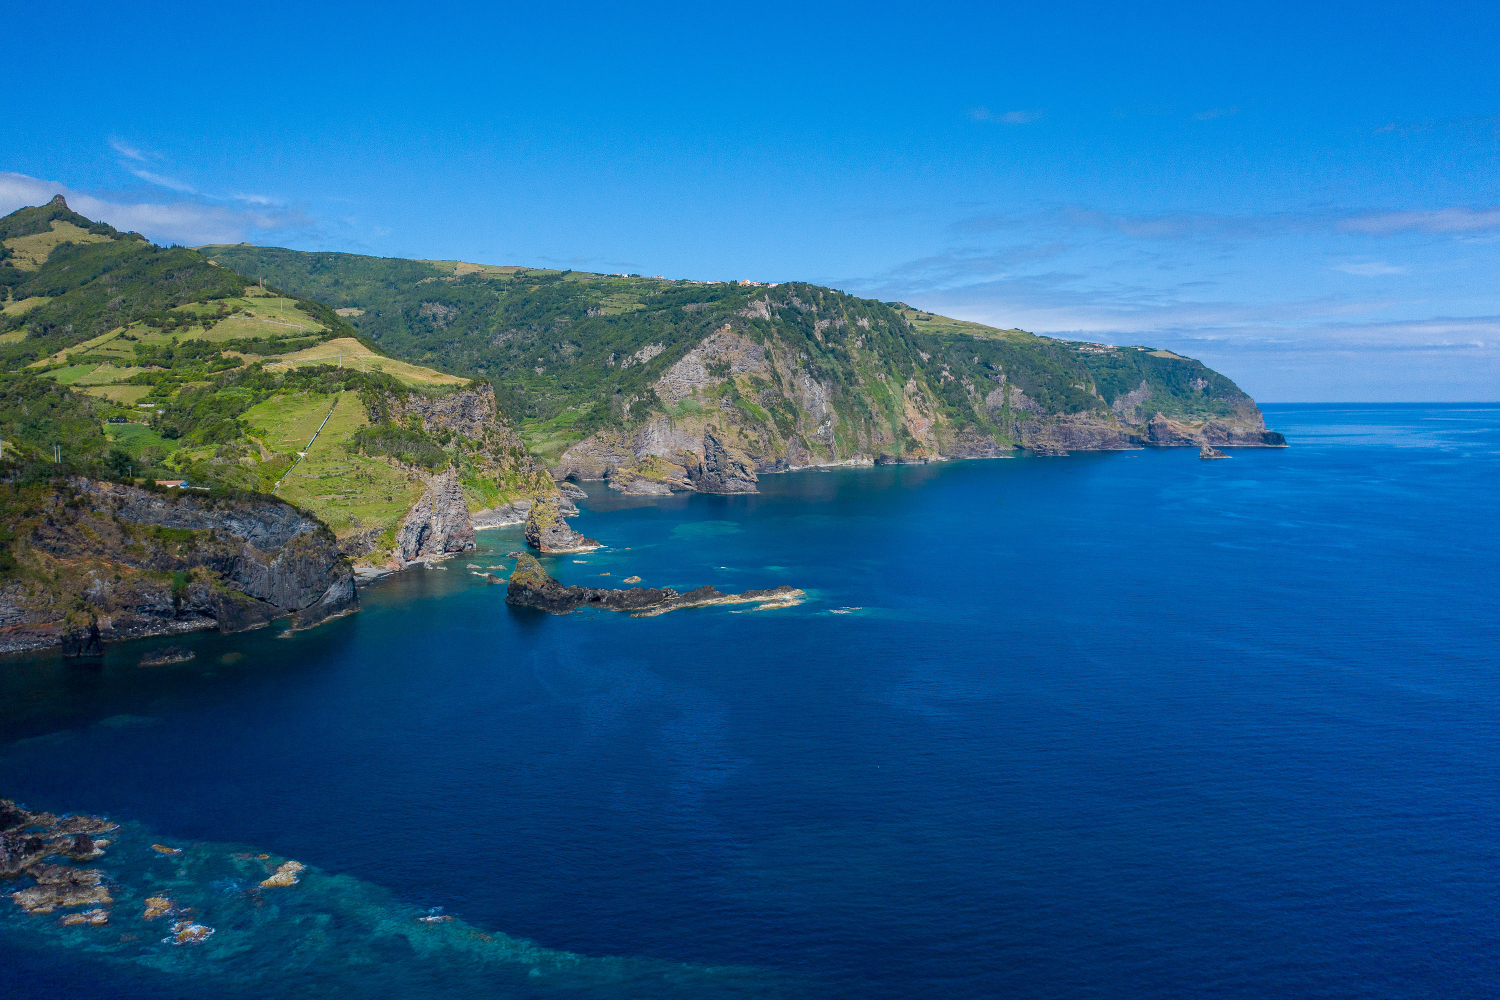 Baía da Alagoa, Ilha das Flores, Açores, Portugal